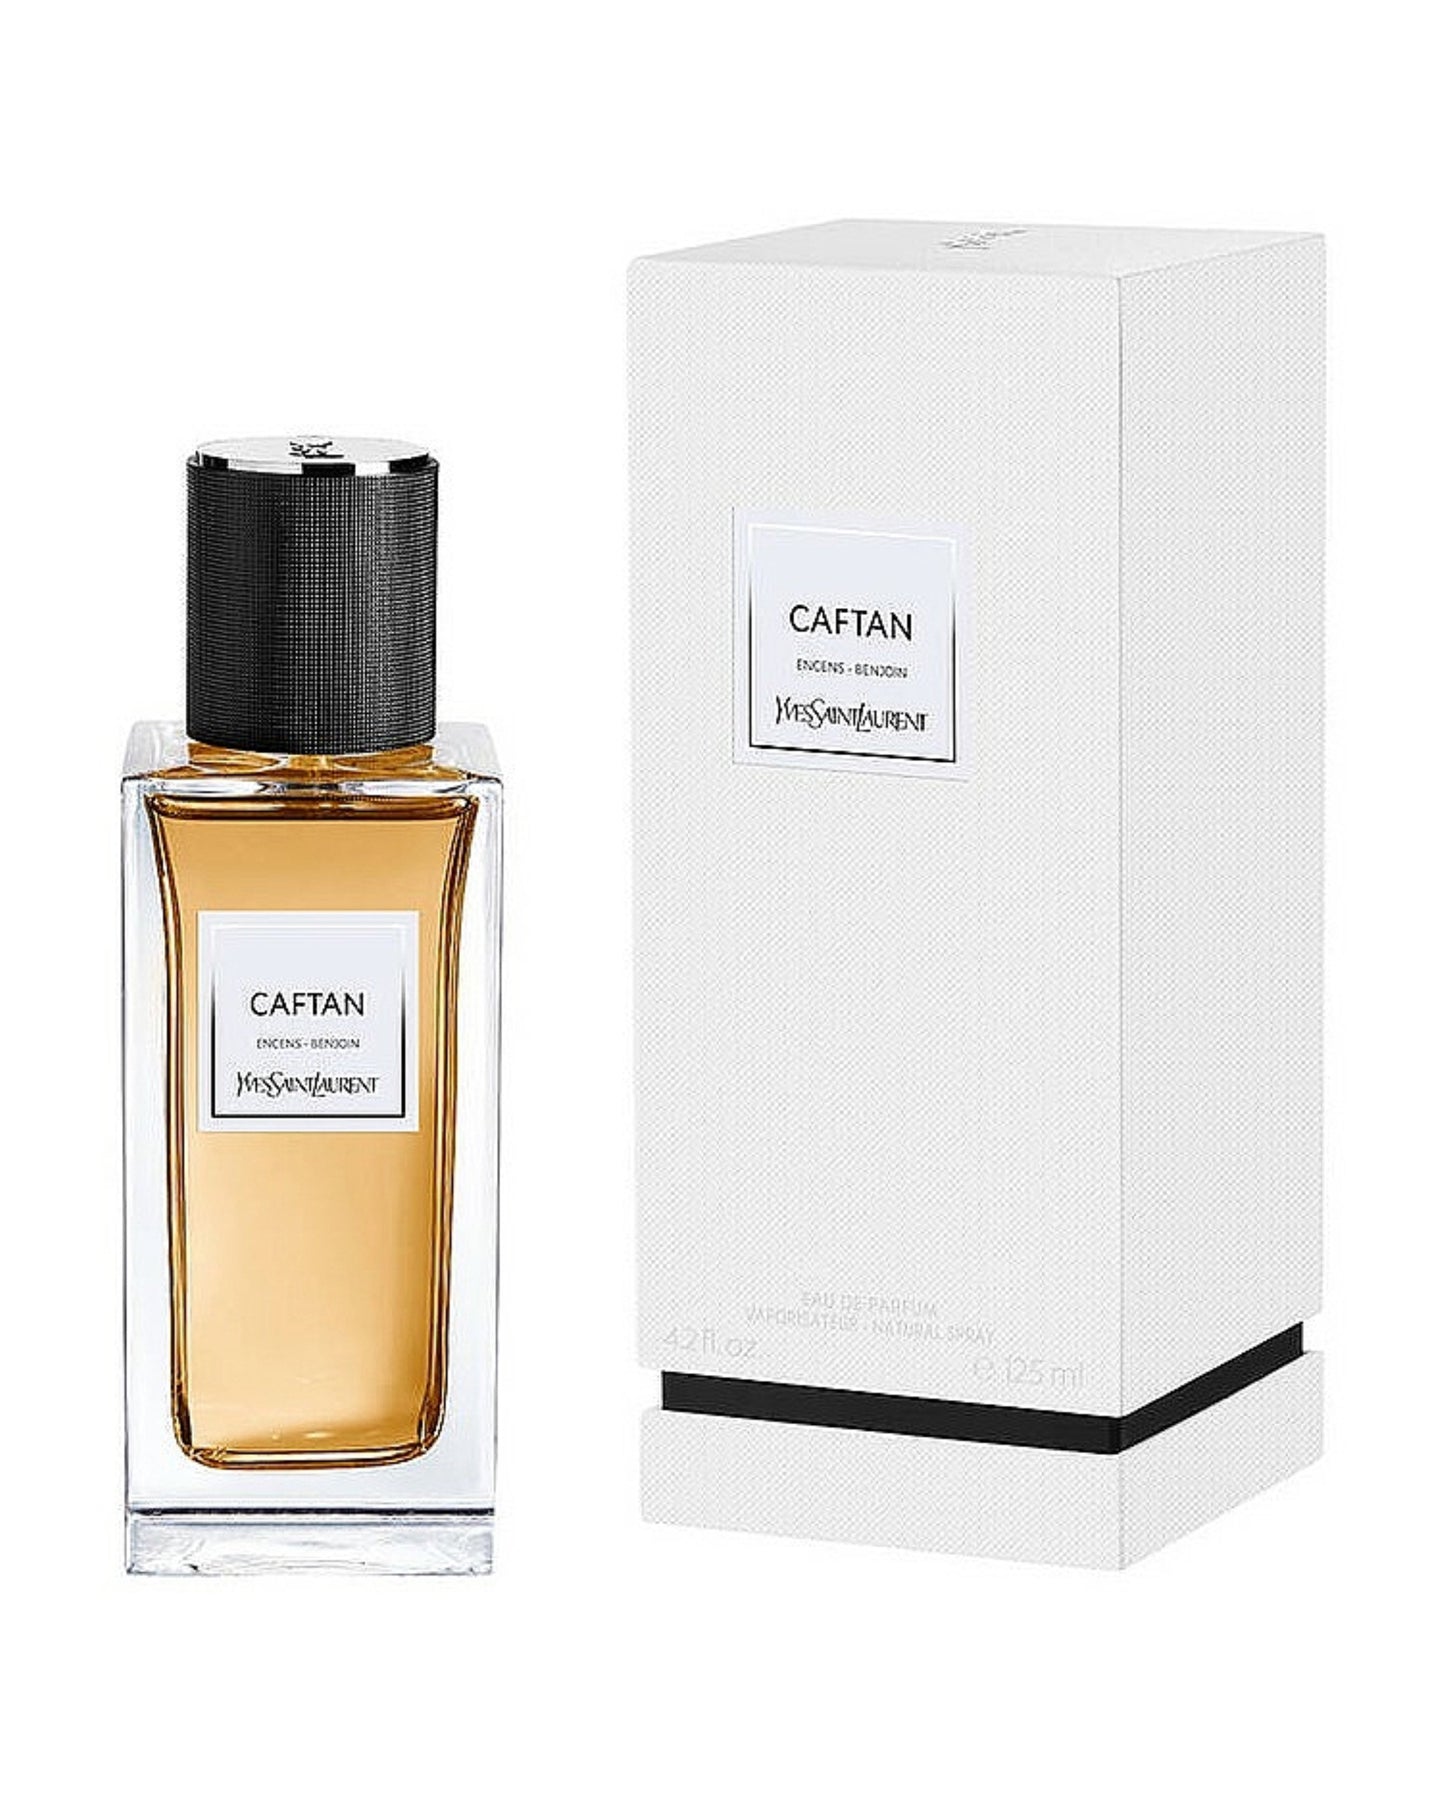 YVES SAINT LAURENT - CAFTAN Eau De Parfum Unisexe-foryou-vente de parfum original au Maroc-parfum original Maroc-prix maroc-foryou parfum original